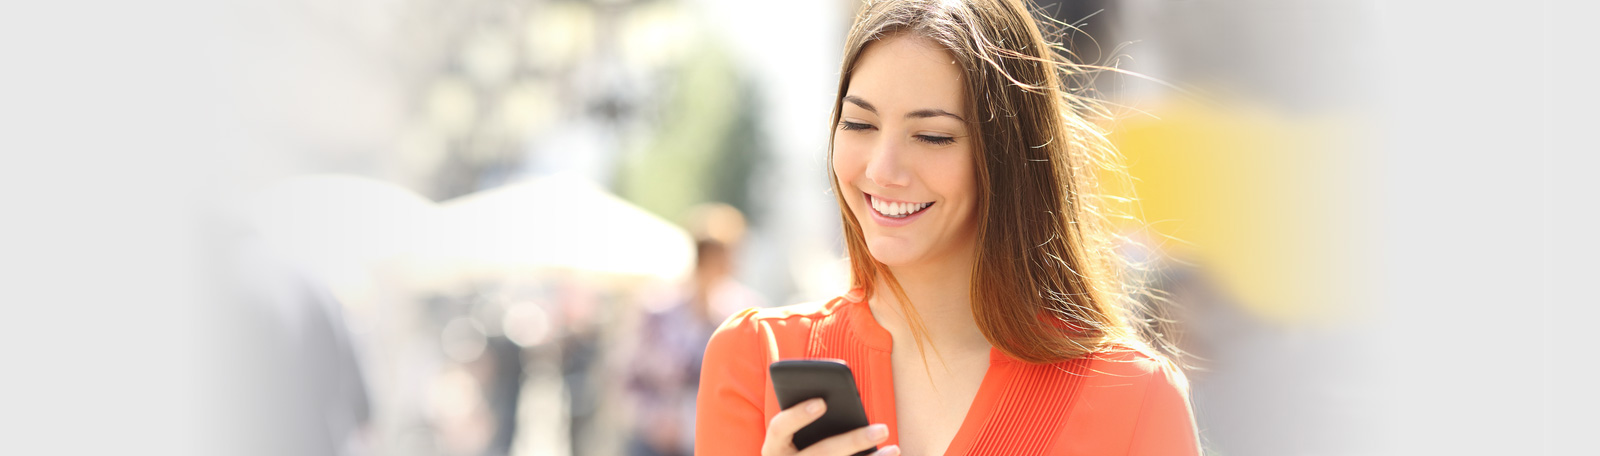 mobilne serwisy randkowe online randki online dla entuzjastów outdooru